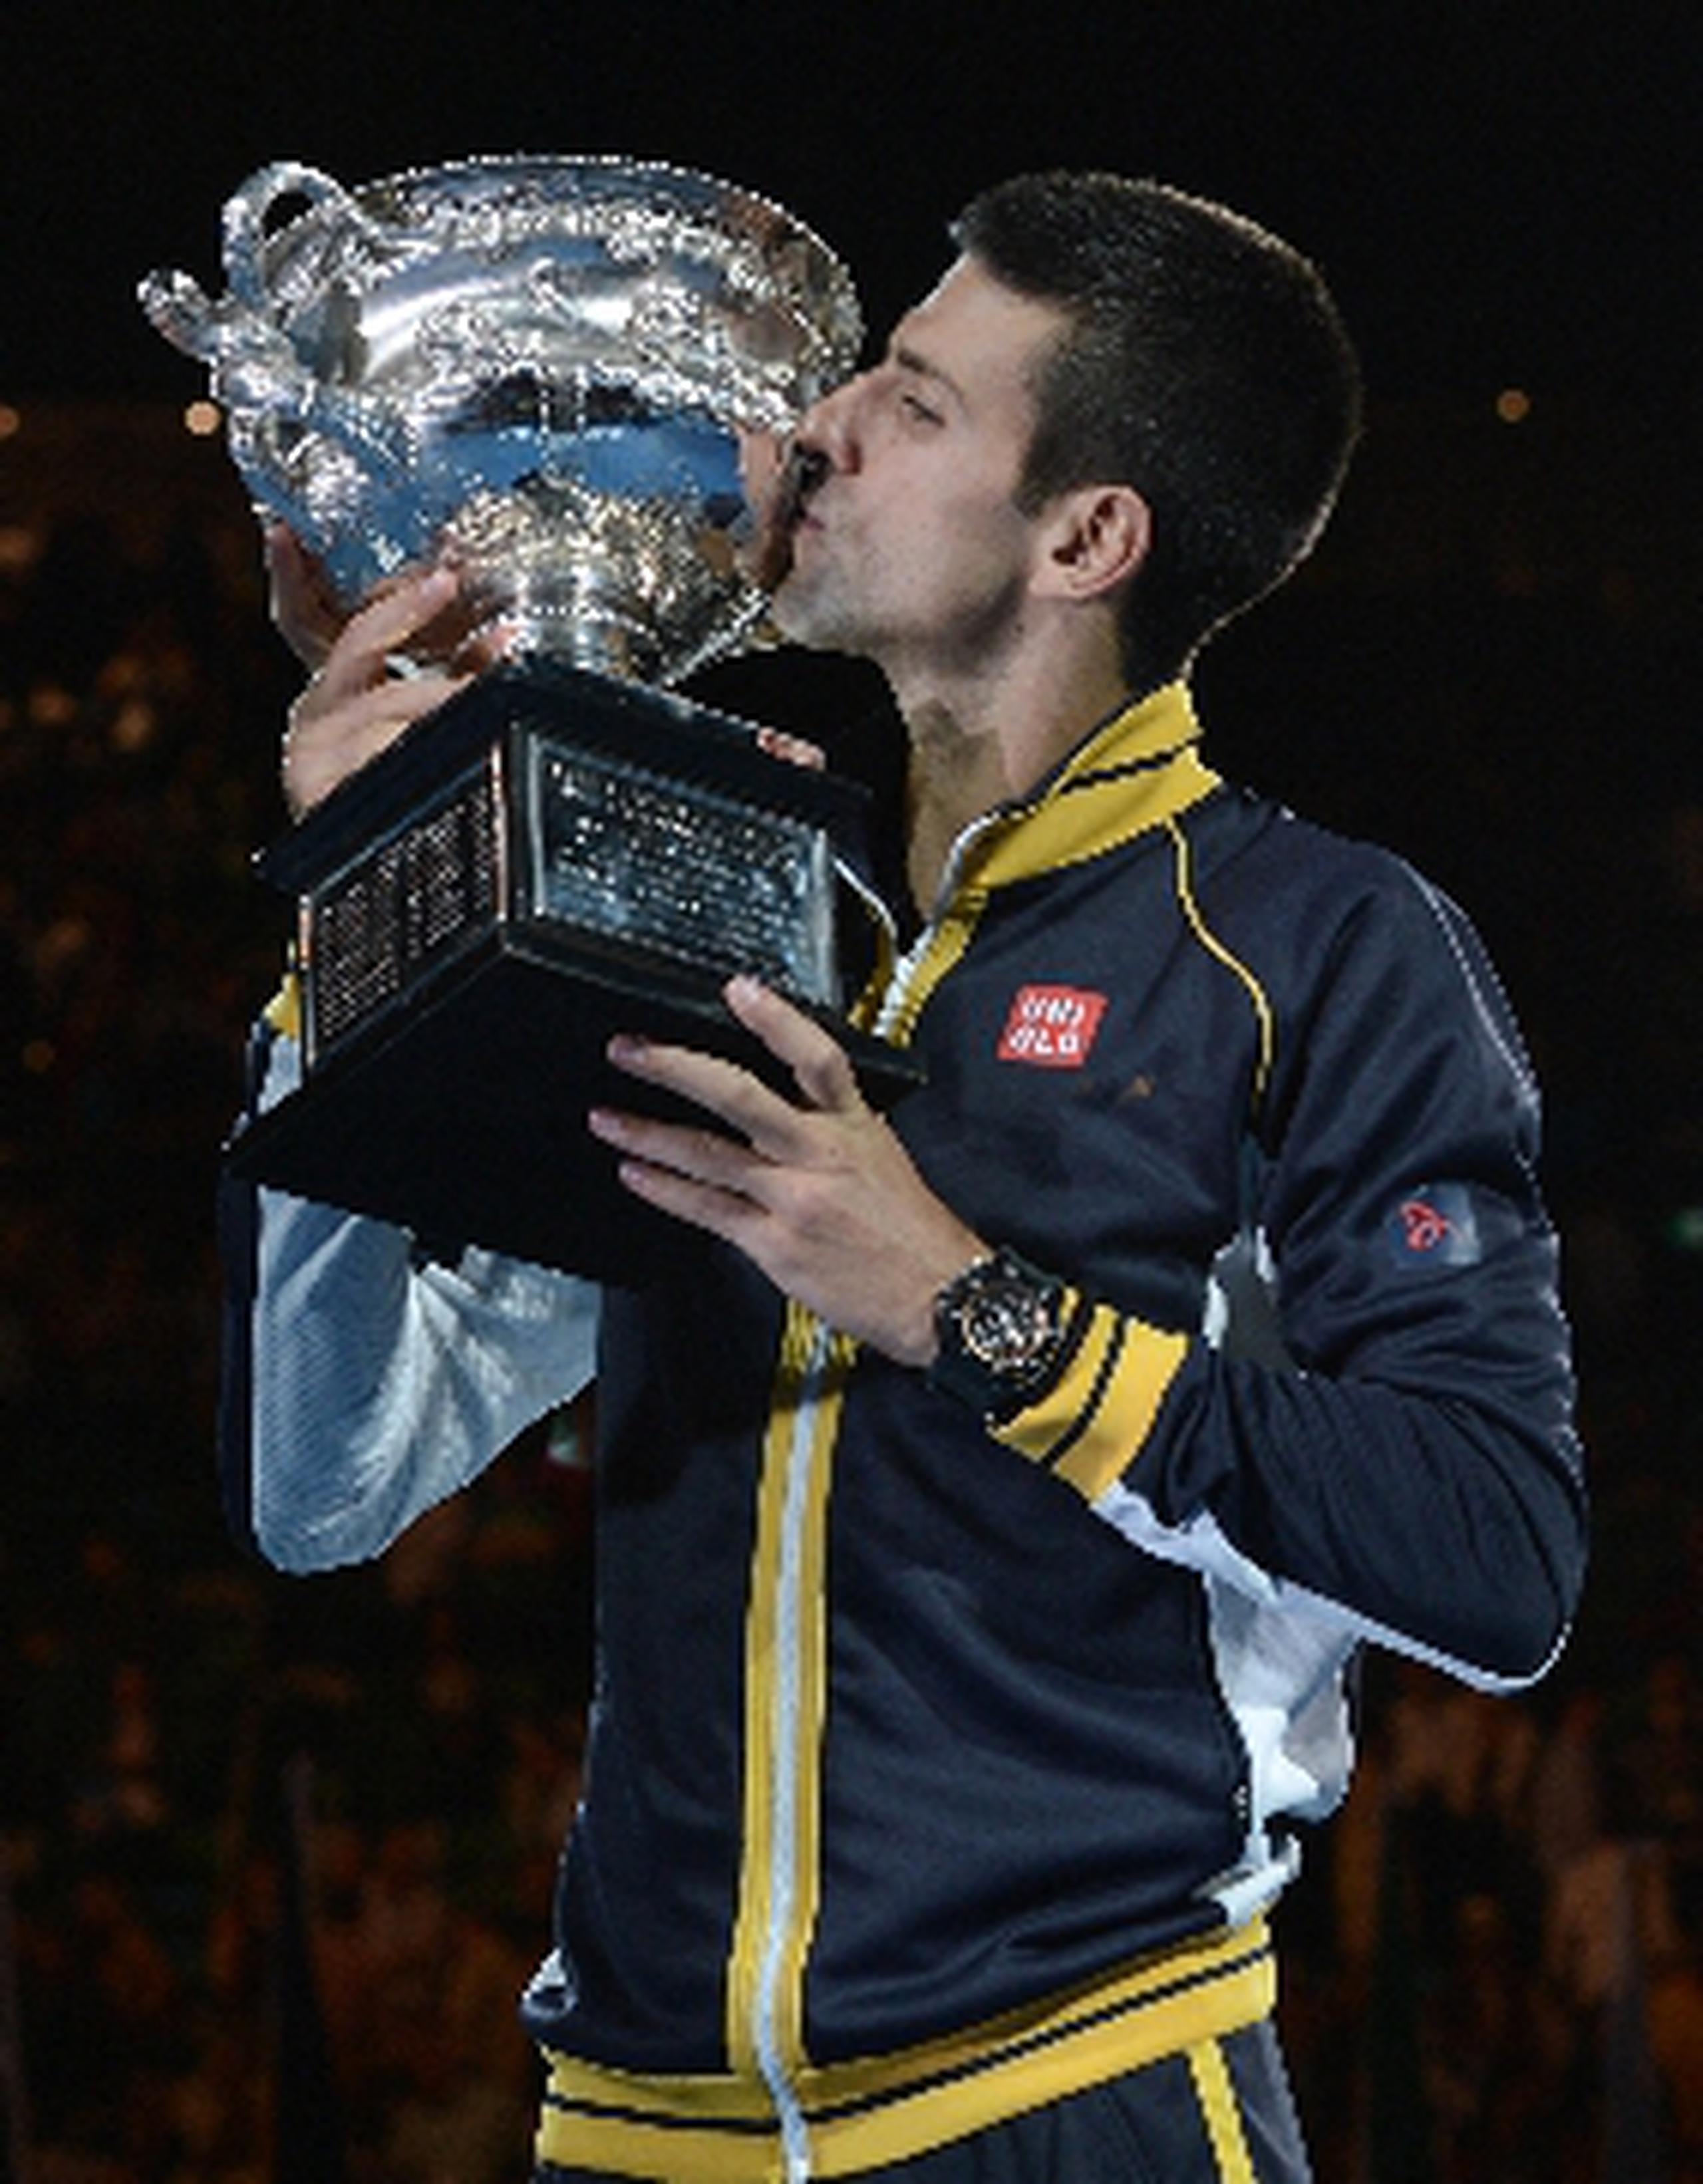   Novak Djokovic besa el trofeo de campeonato durante la ceremonia de premiación en Melbourne. &nbsp;<font color="yellow">(AFP)</font>